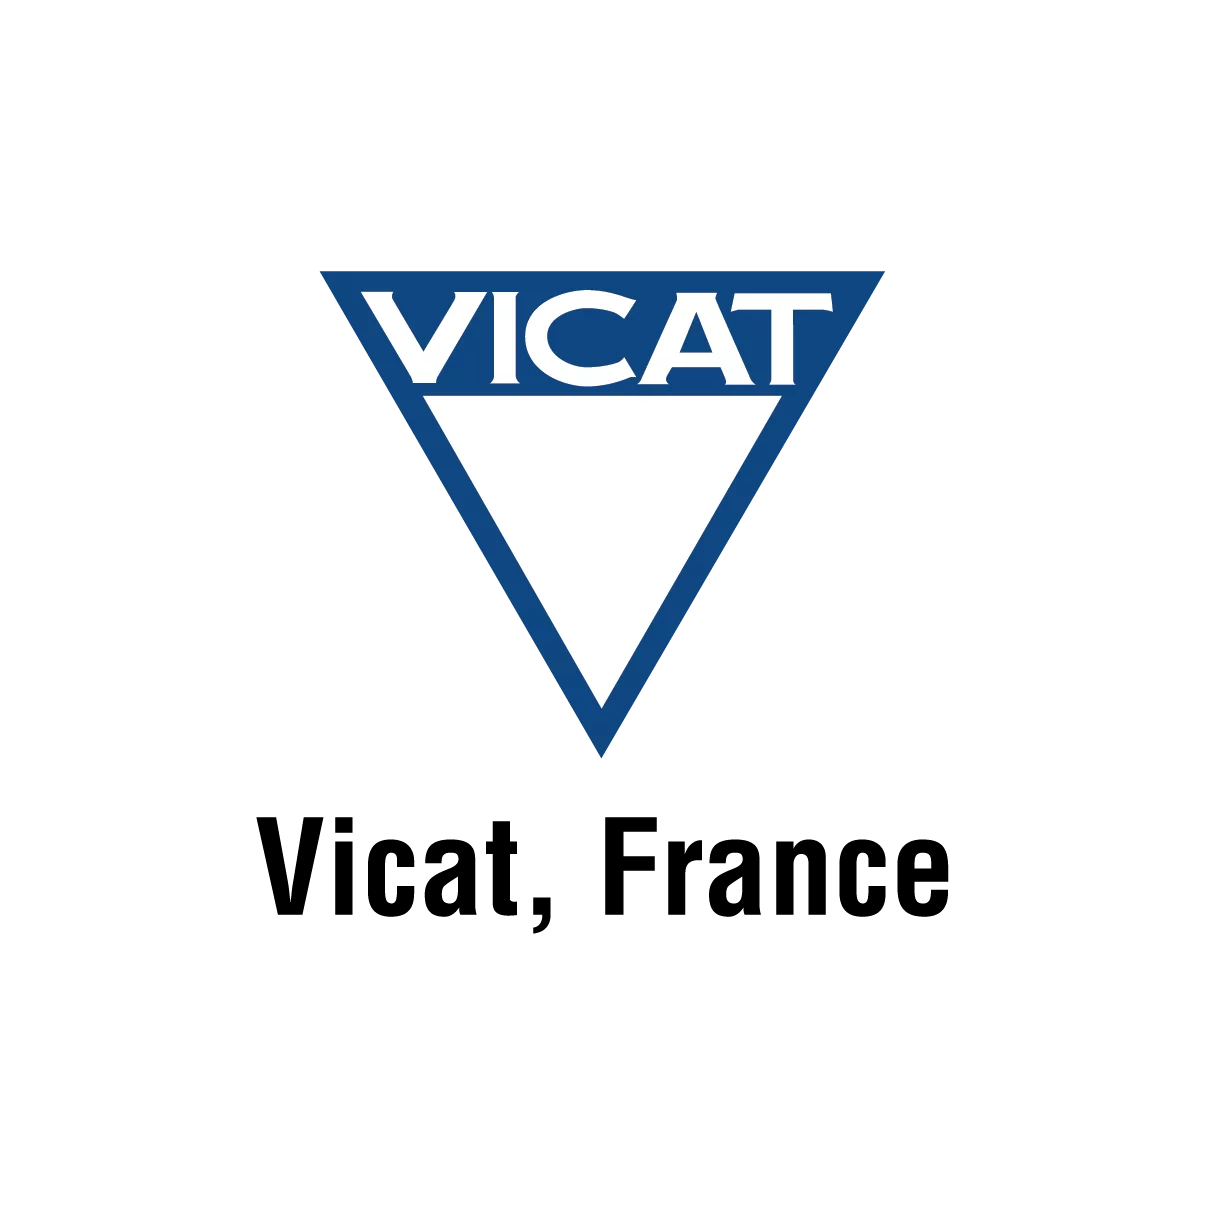 VICAT recherche un(e) Assistant(e) formation – STAGE ou ALTERNANCE